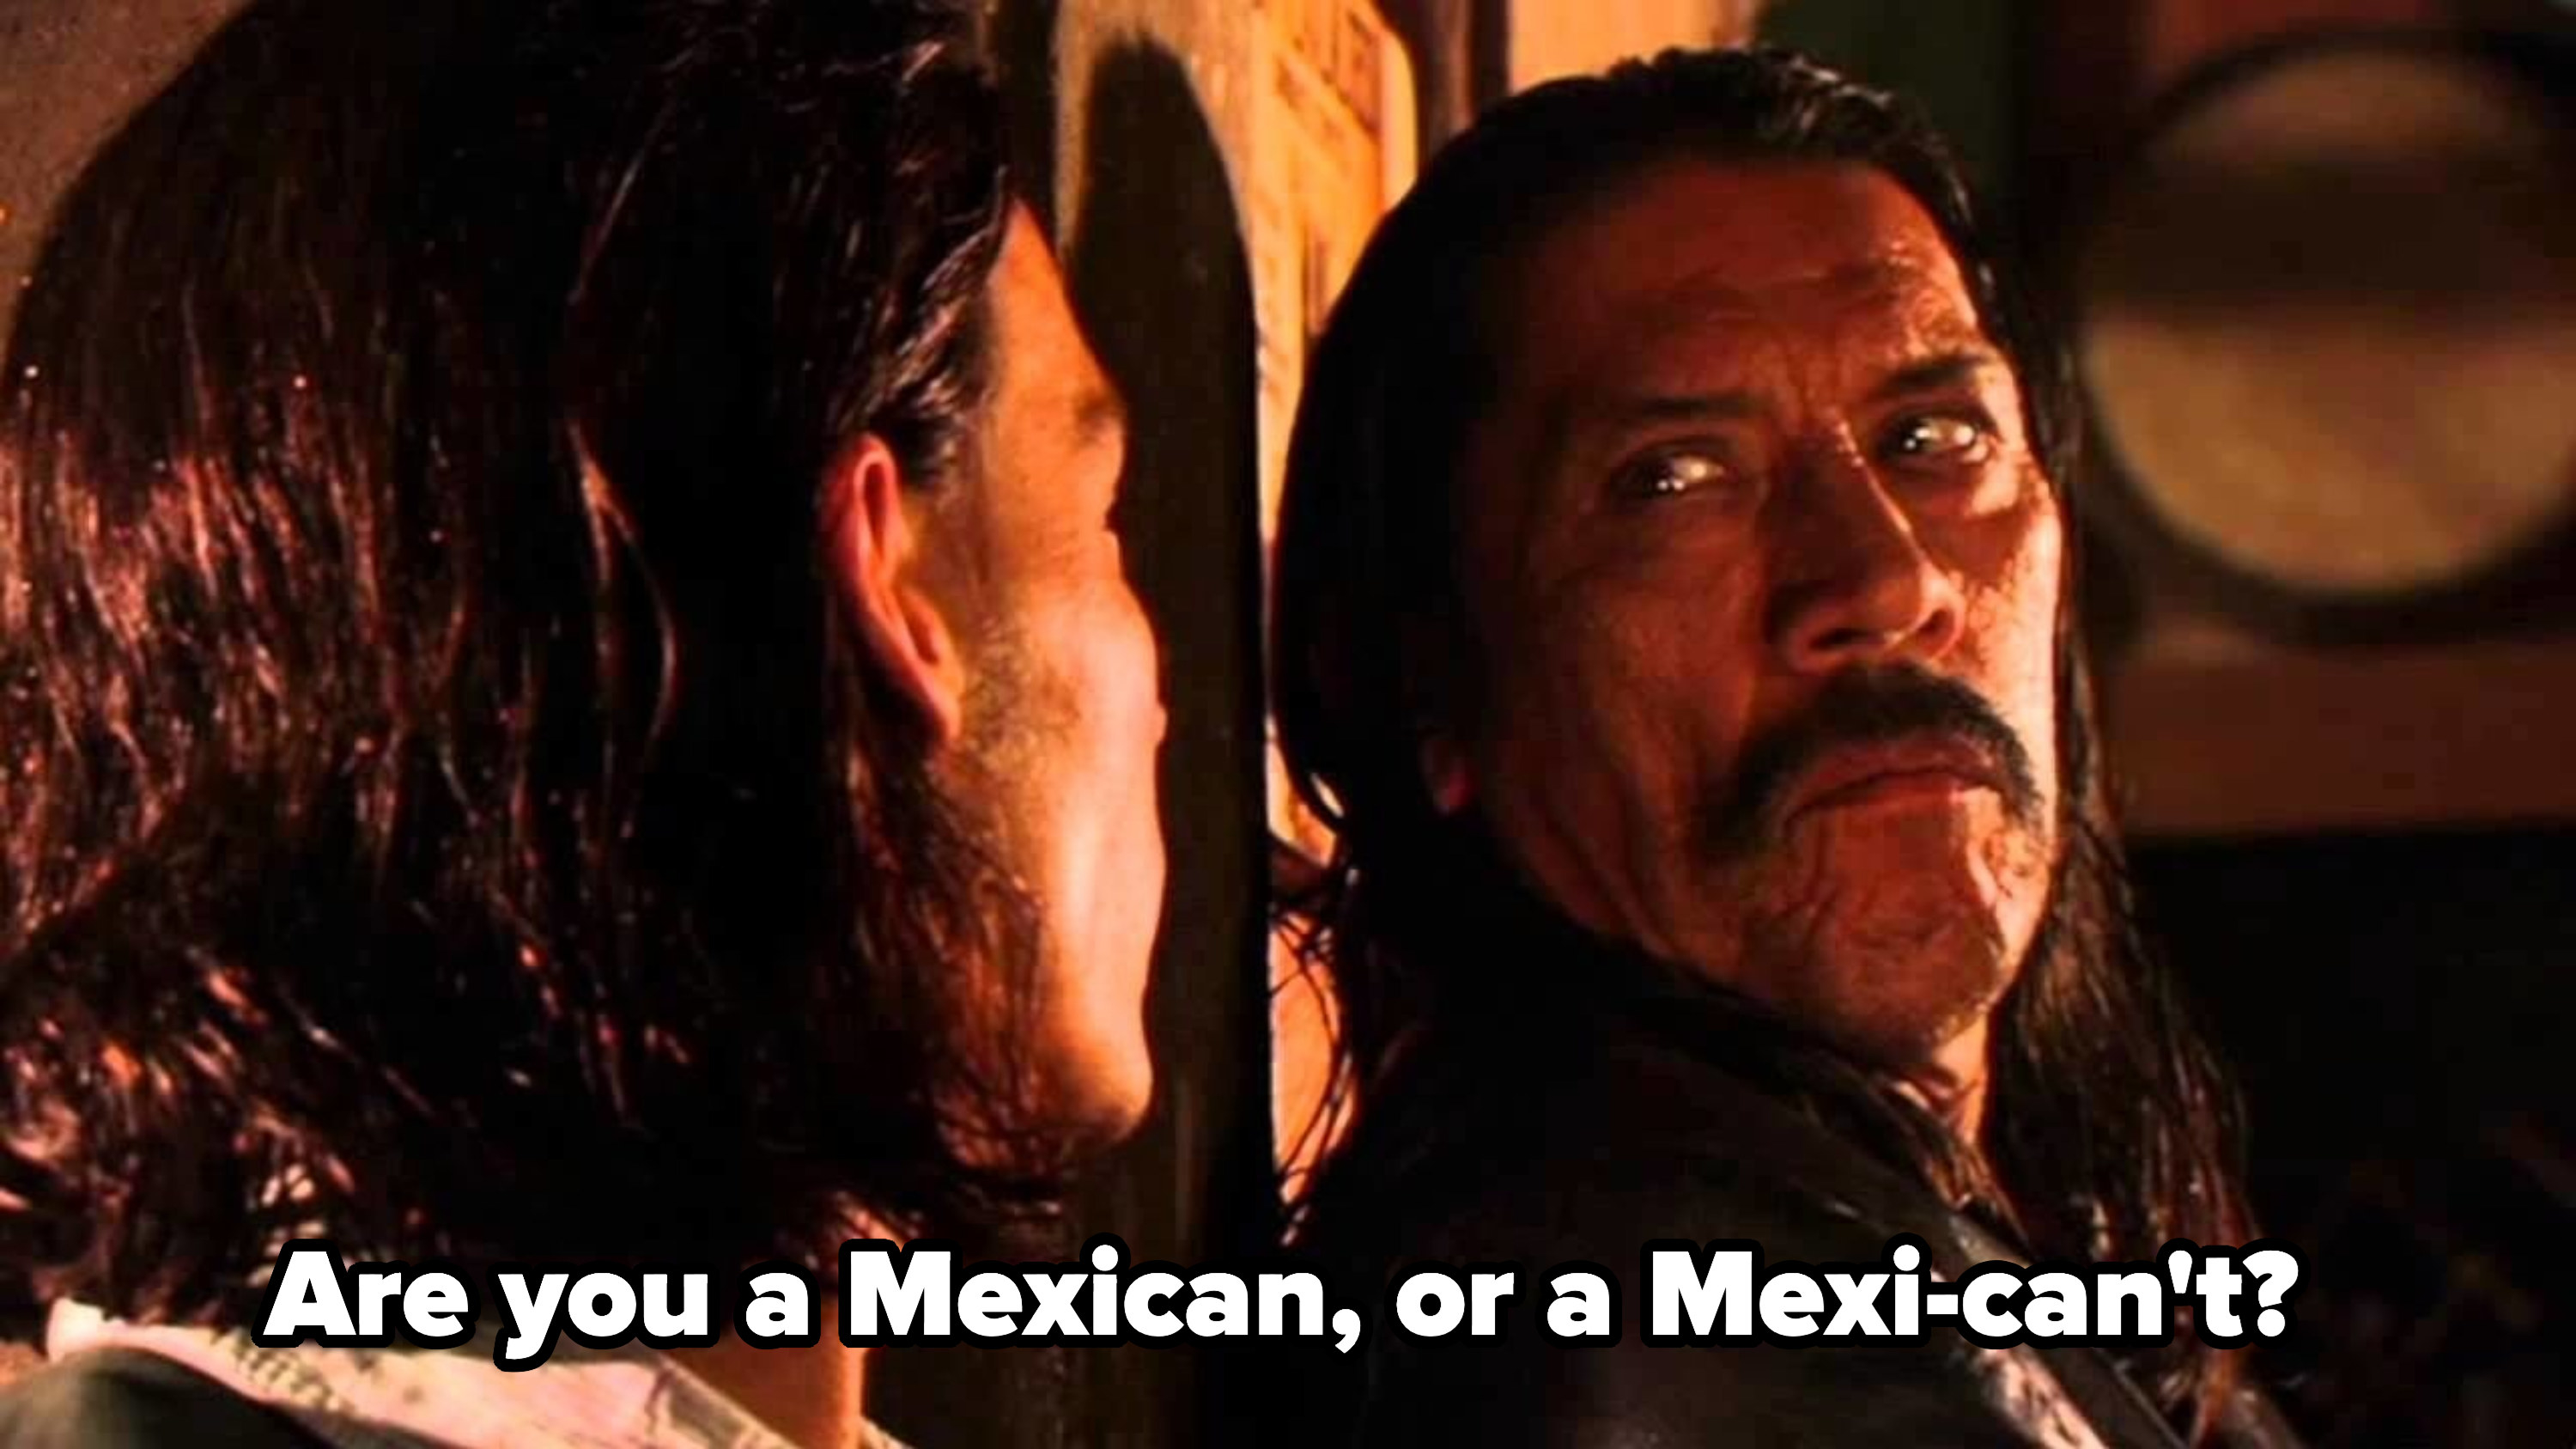 代理金沙告诉Cucuy:你是墨西哥,或Mexi-can& # x27; t ?“